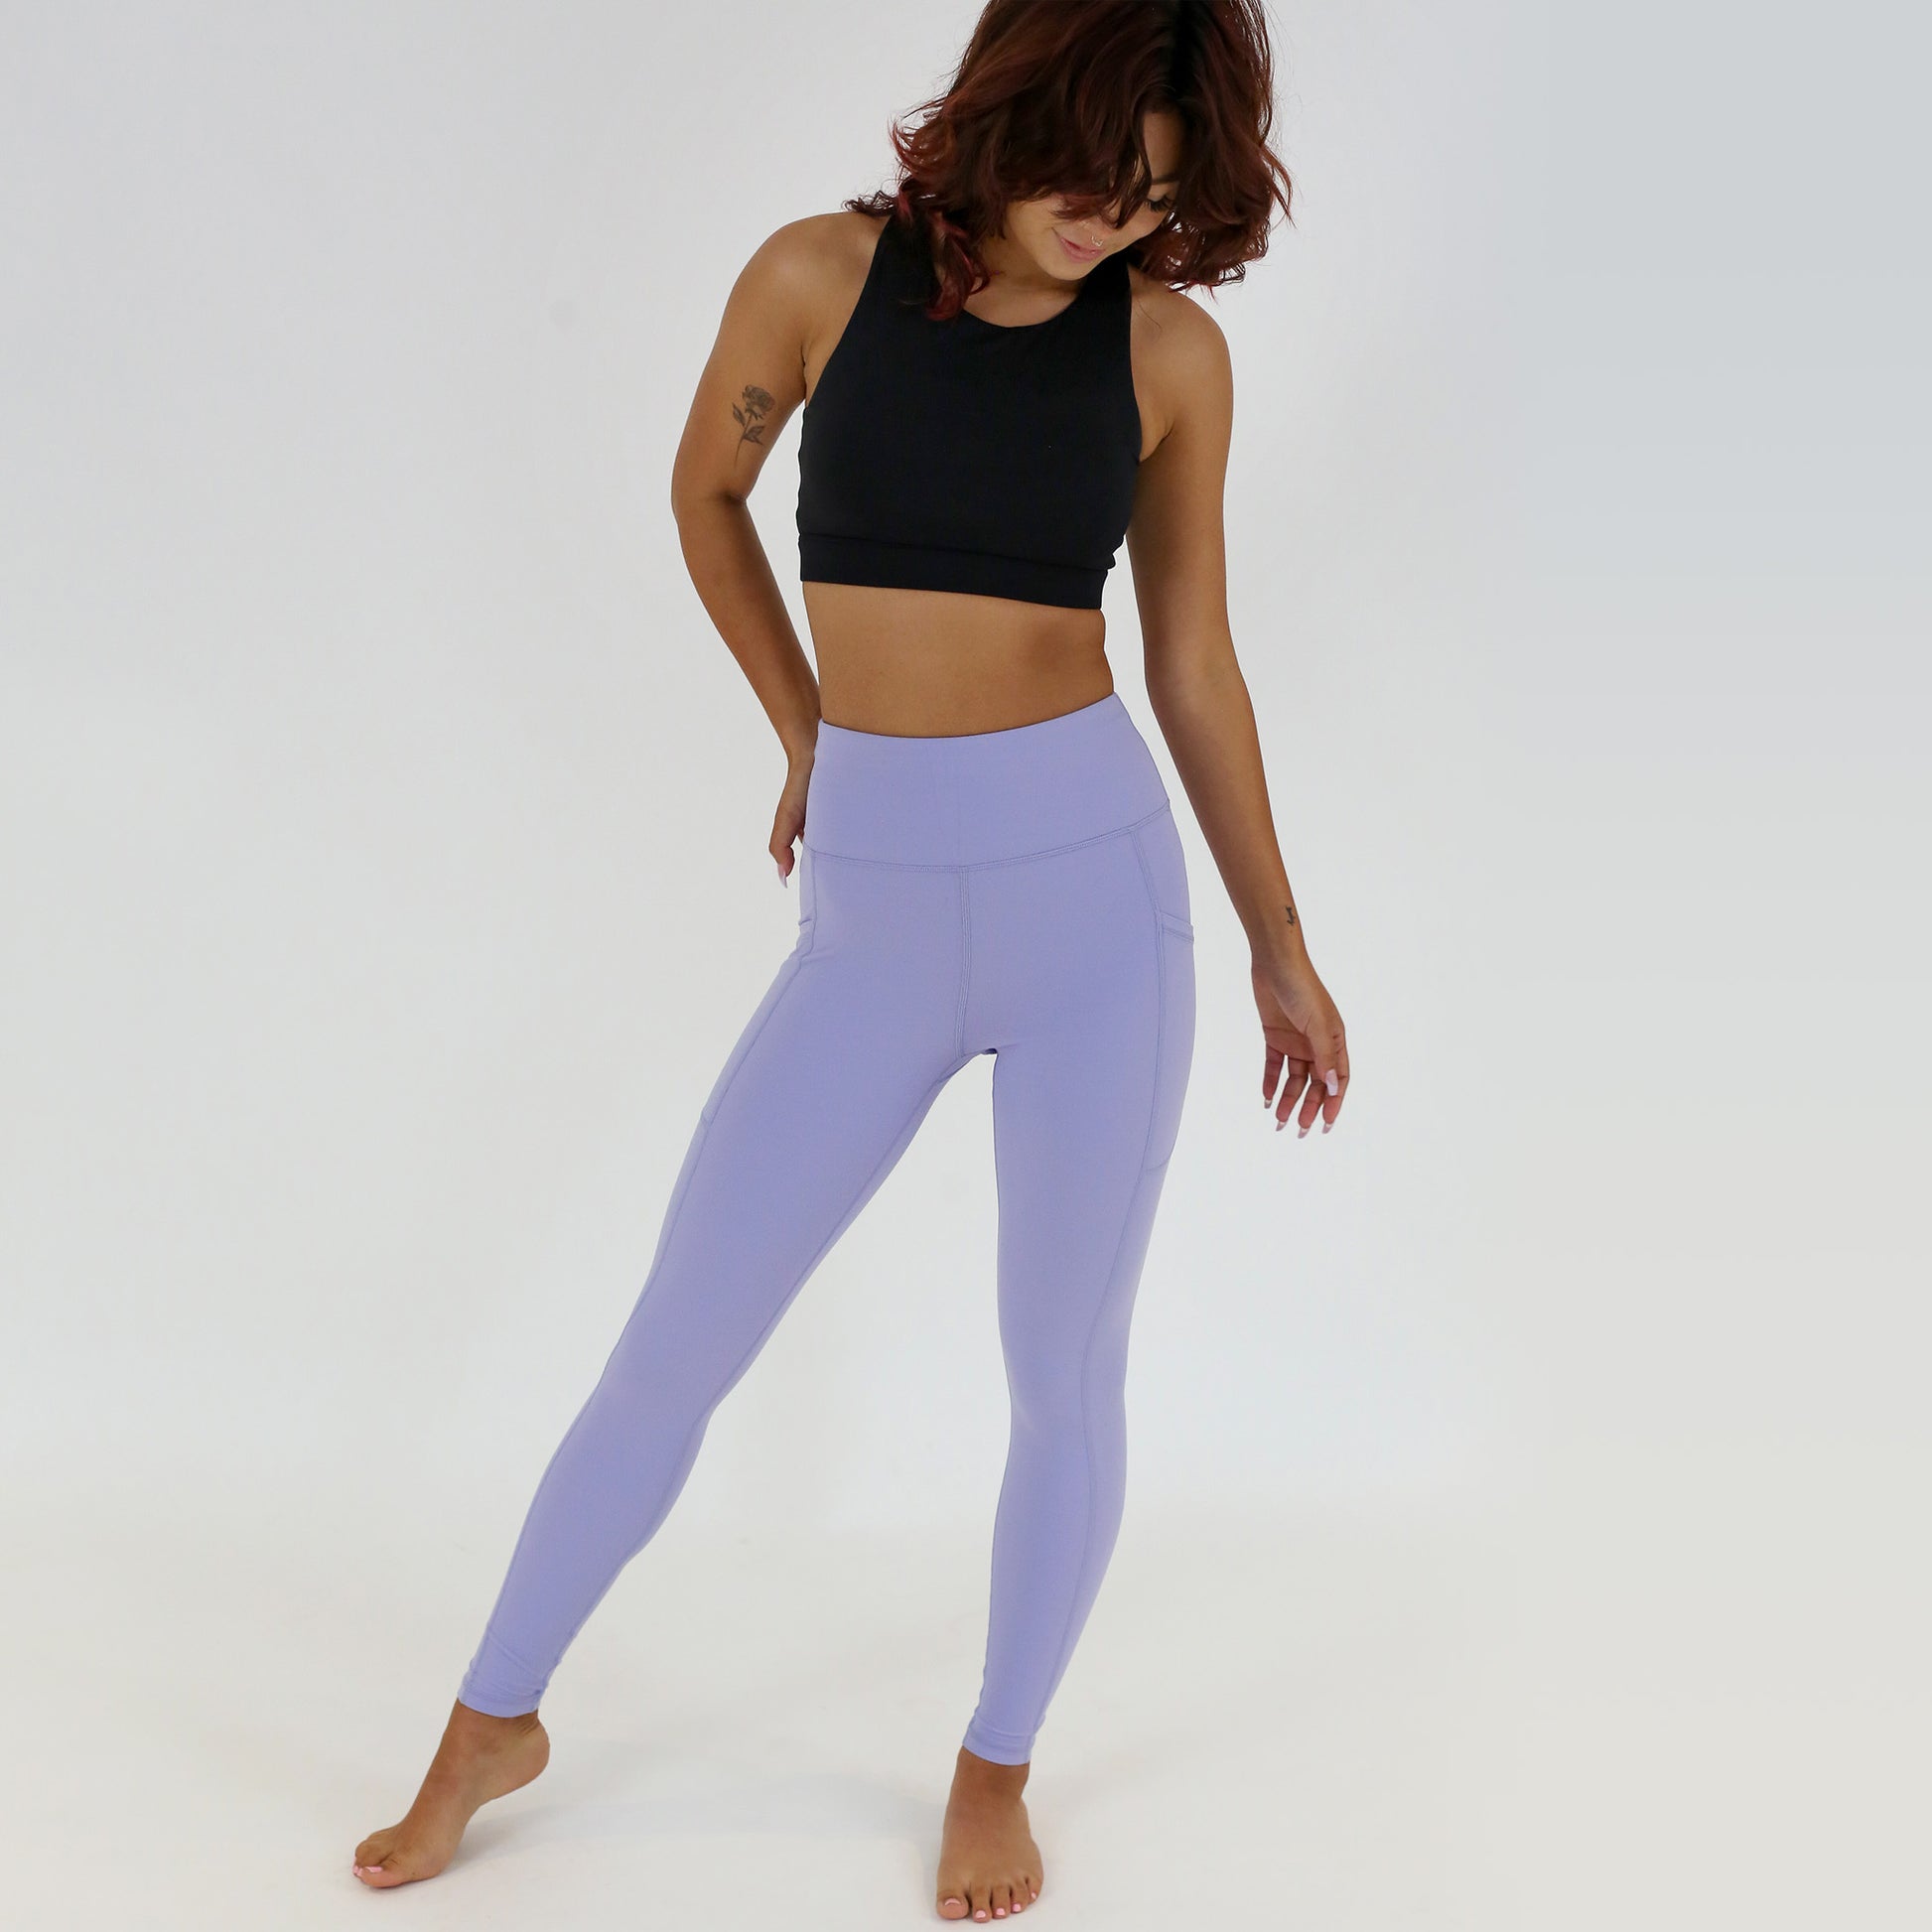 Pastel Pink – Workout Leggings, Pocketed Sports Leggings